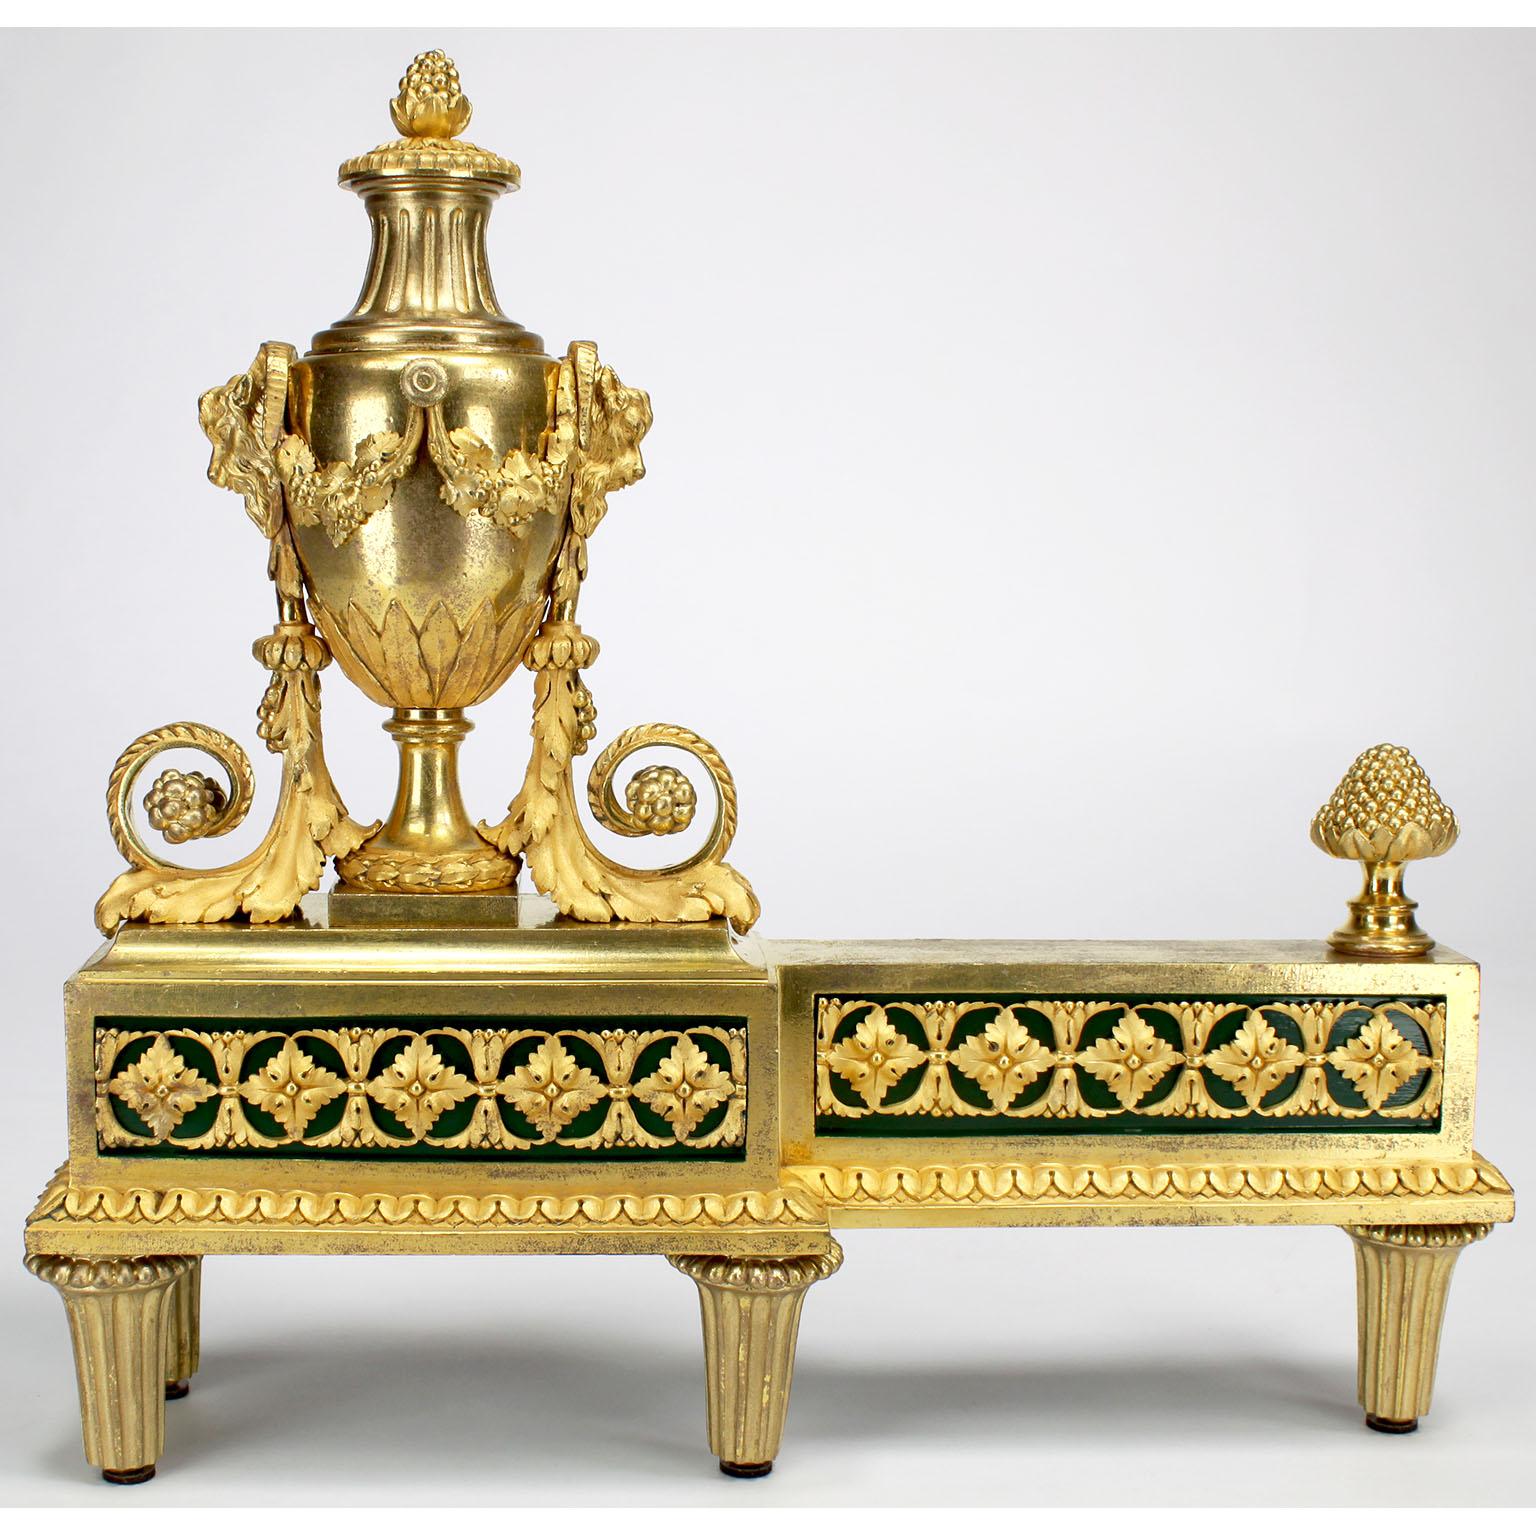 Très belle et rare paire de Chenets en bronze doré de style Louis XVI du XIXe siècle, par Henry Dasson (français, 1825-1896). Les chenets en satin finement ciselé et en bronze doré au mercure, chacun surmonté d'une urne allégorique de style